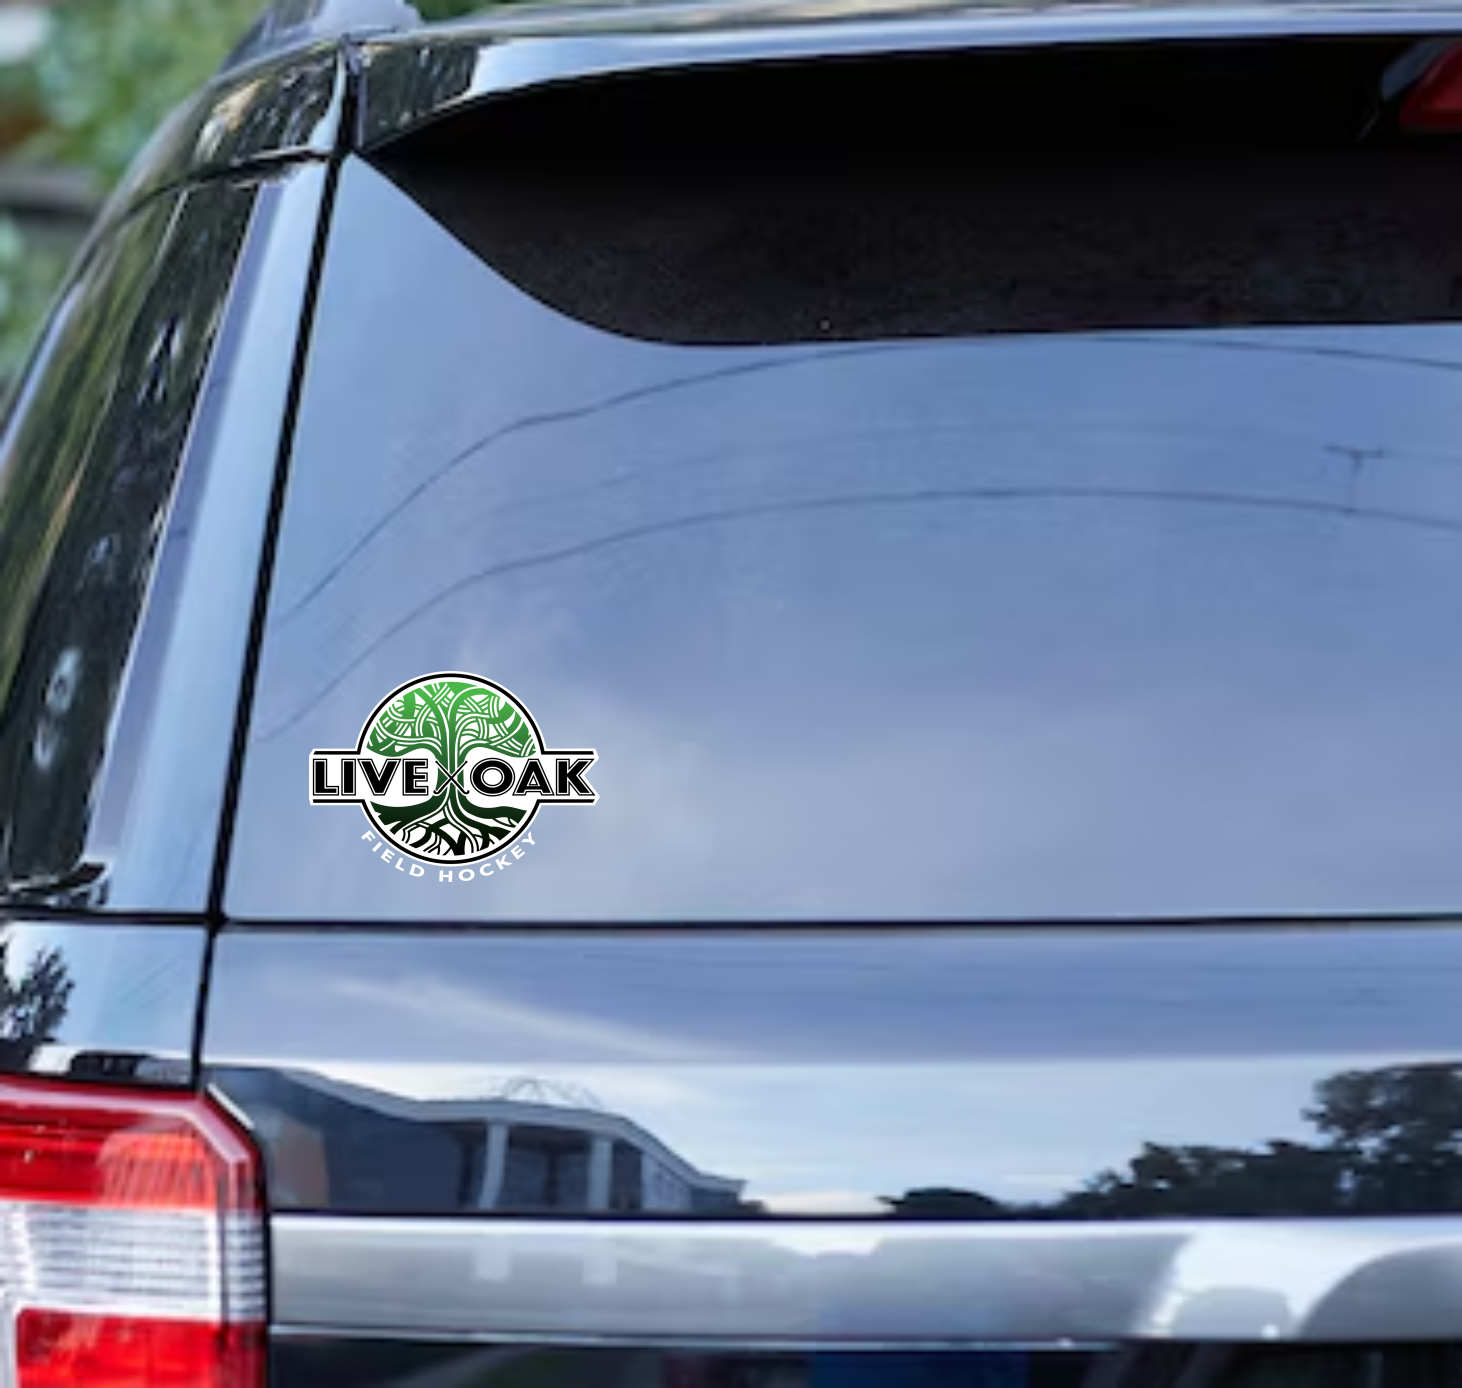 Live Oak Car Sticker